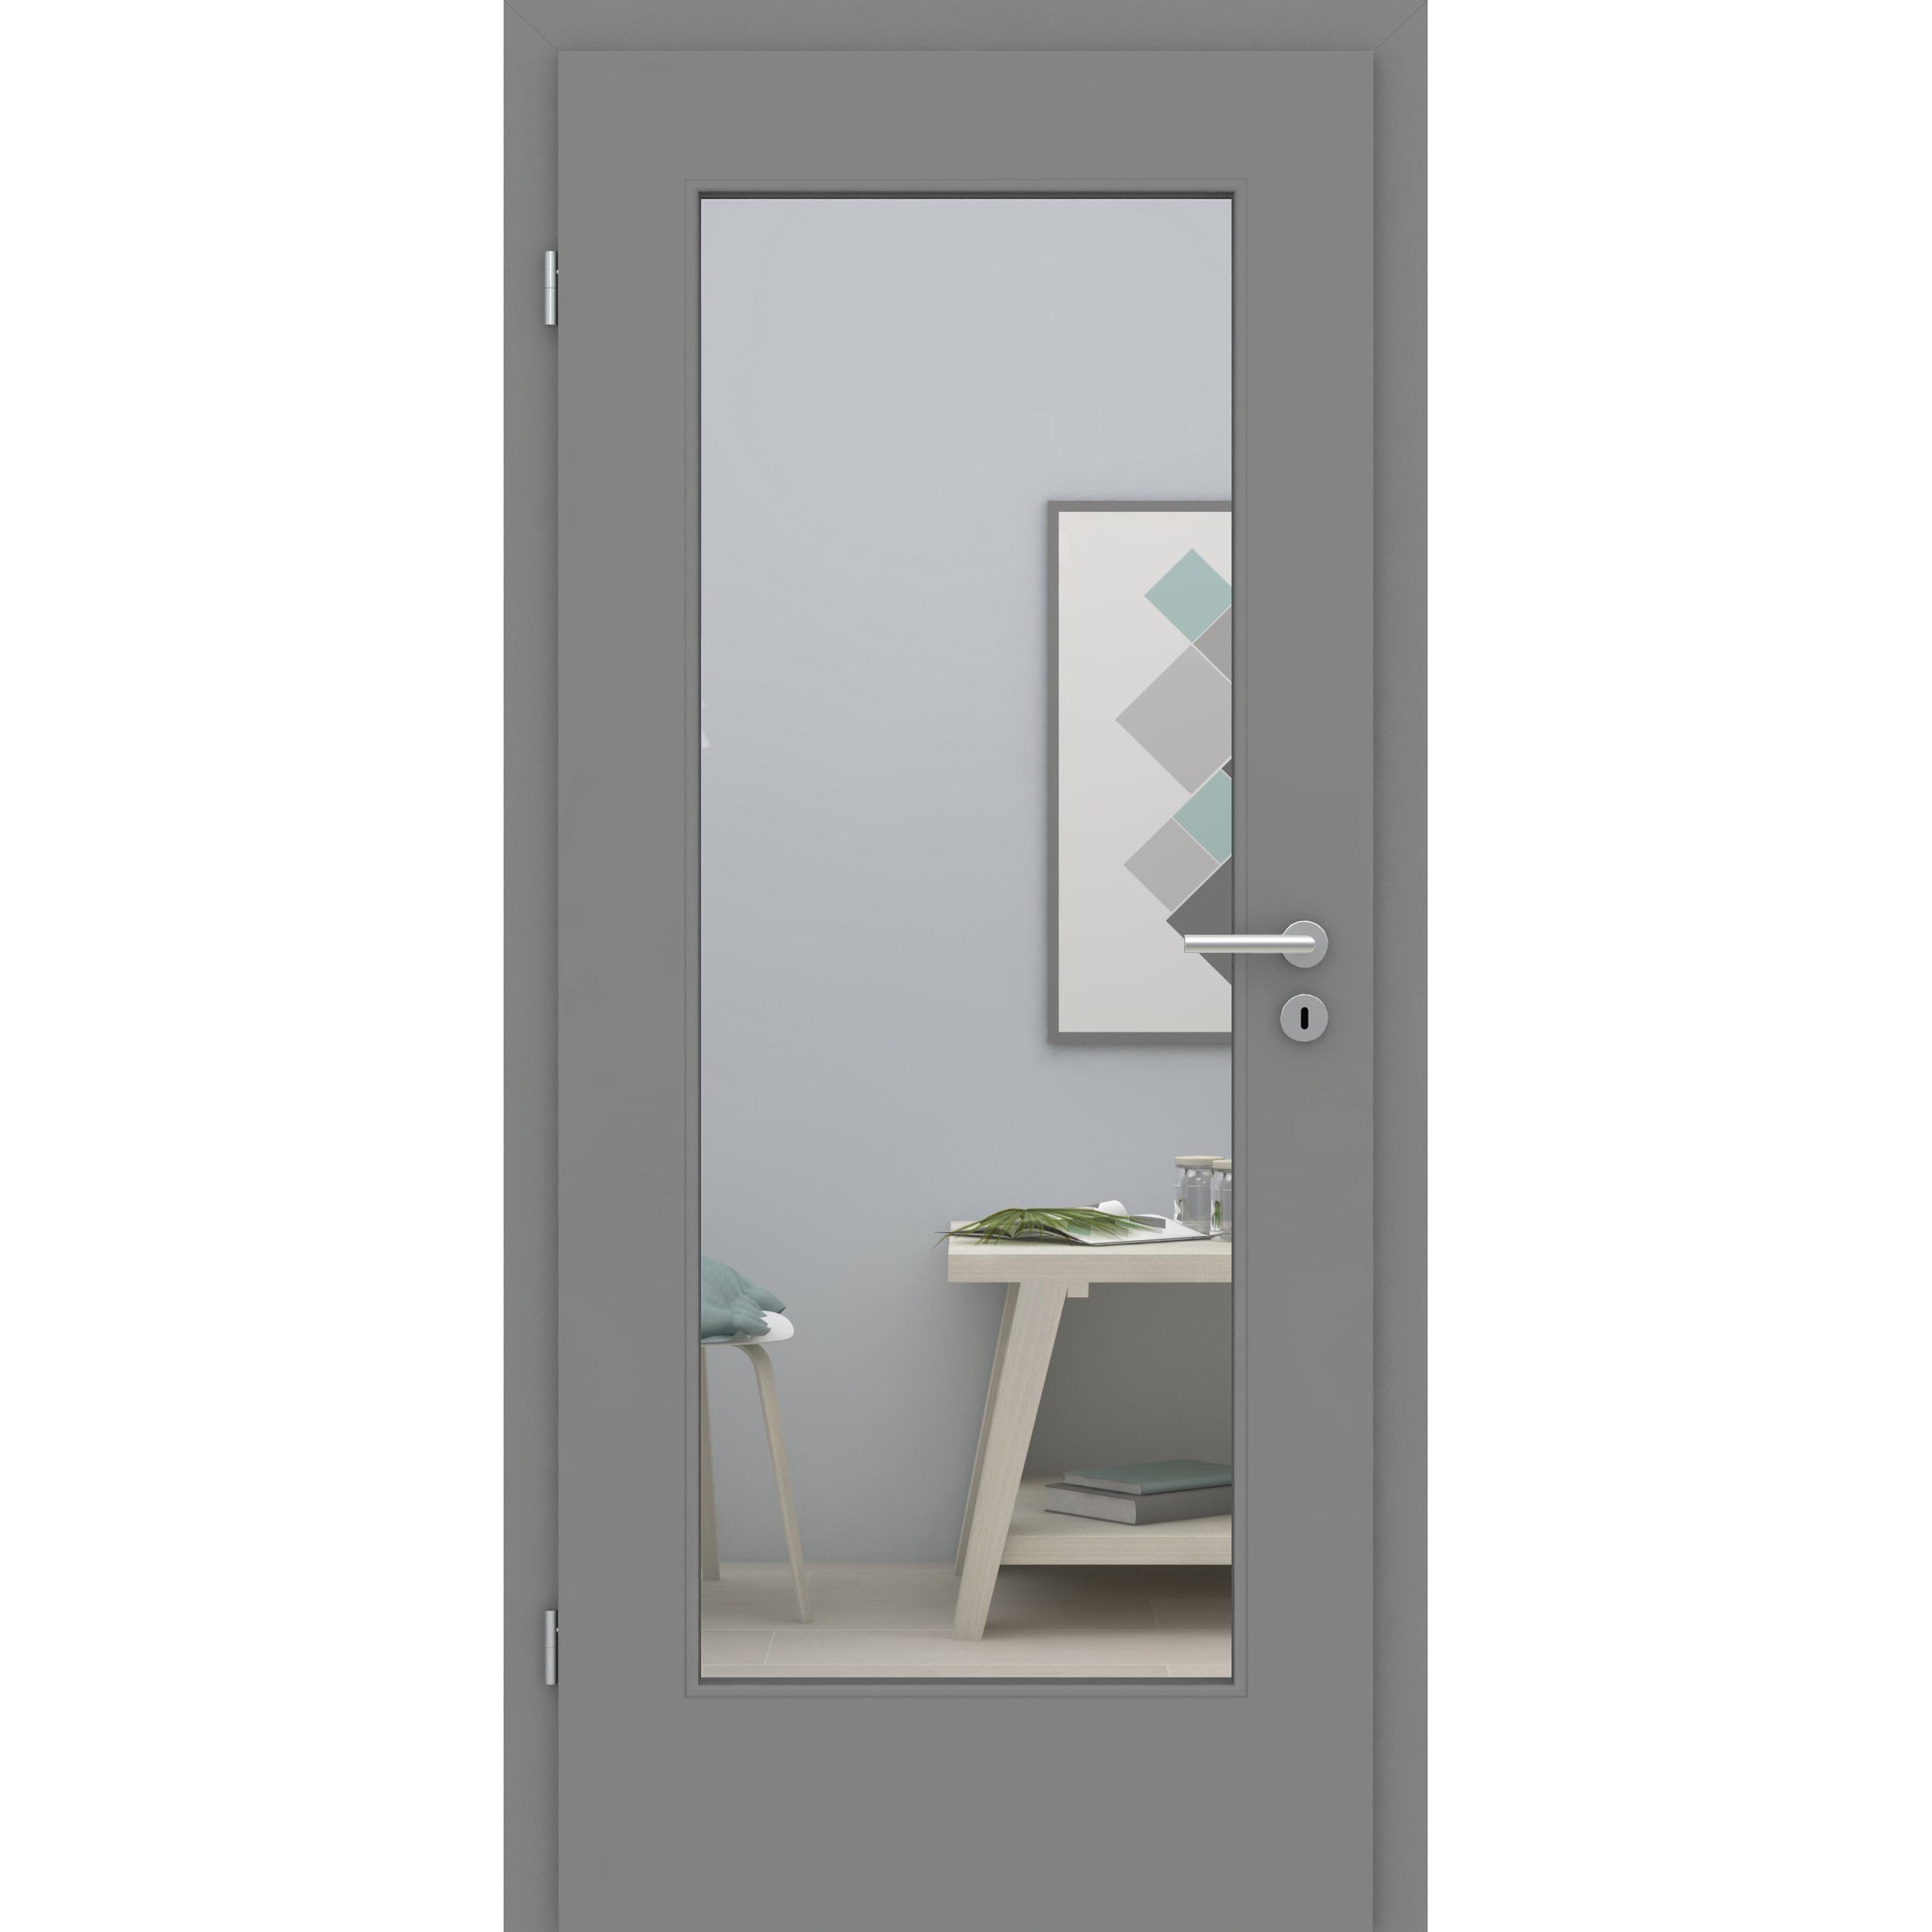 Zimmertür mit Zarge und Lichtausschnitt groß grau glatt Designkante - Modell LA1